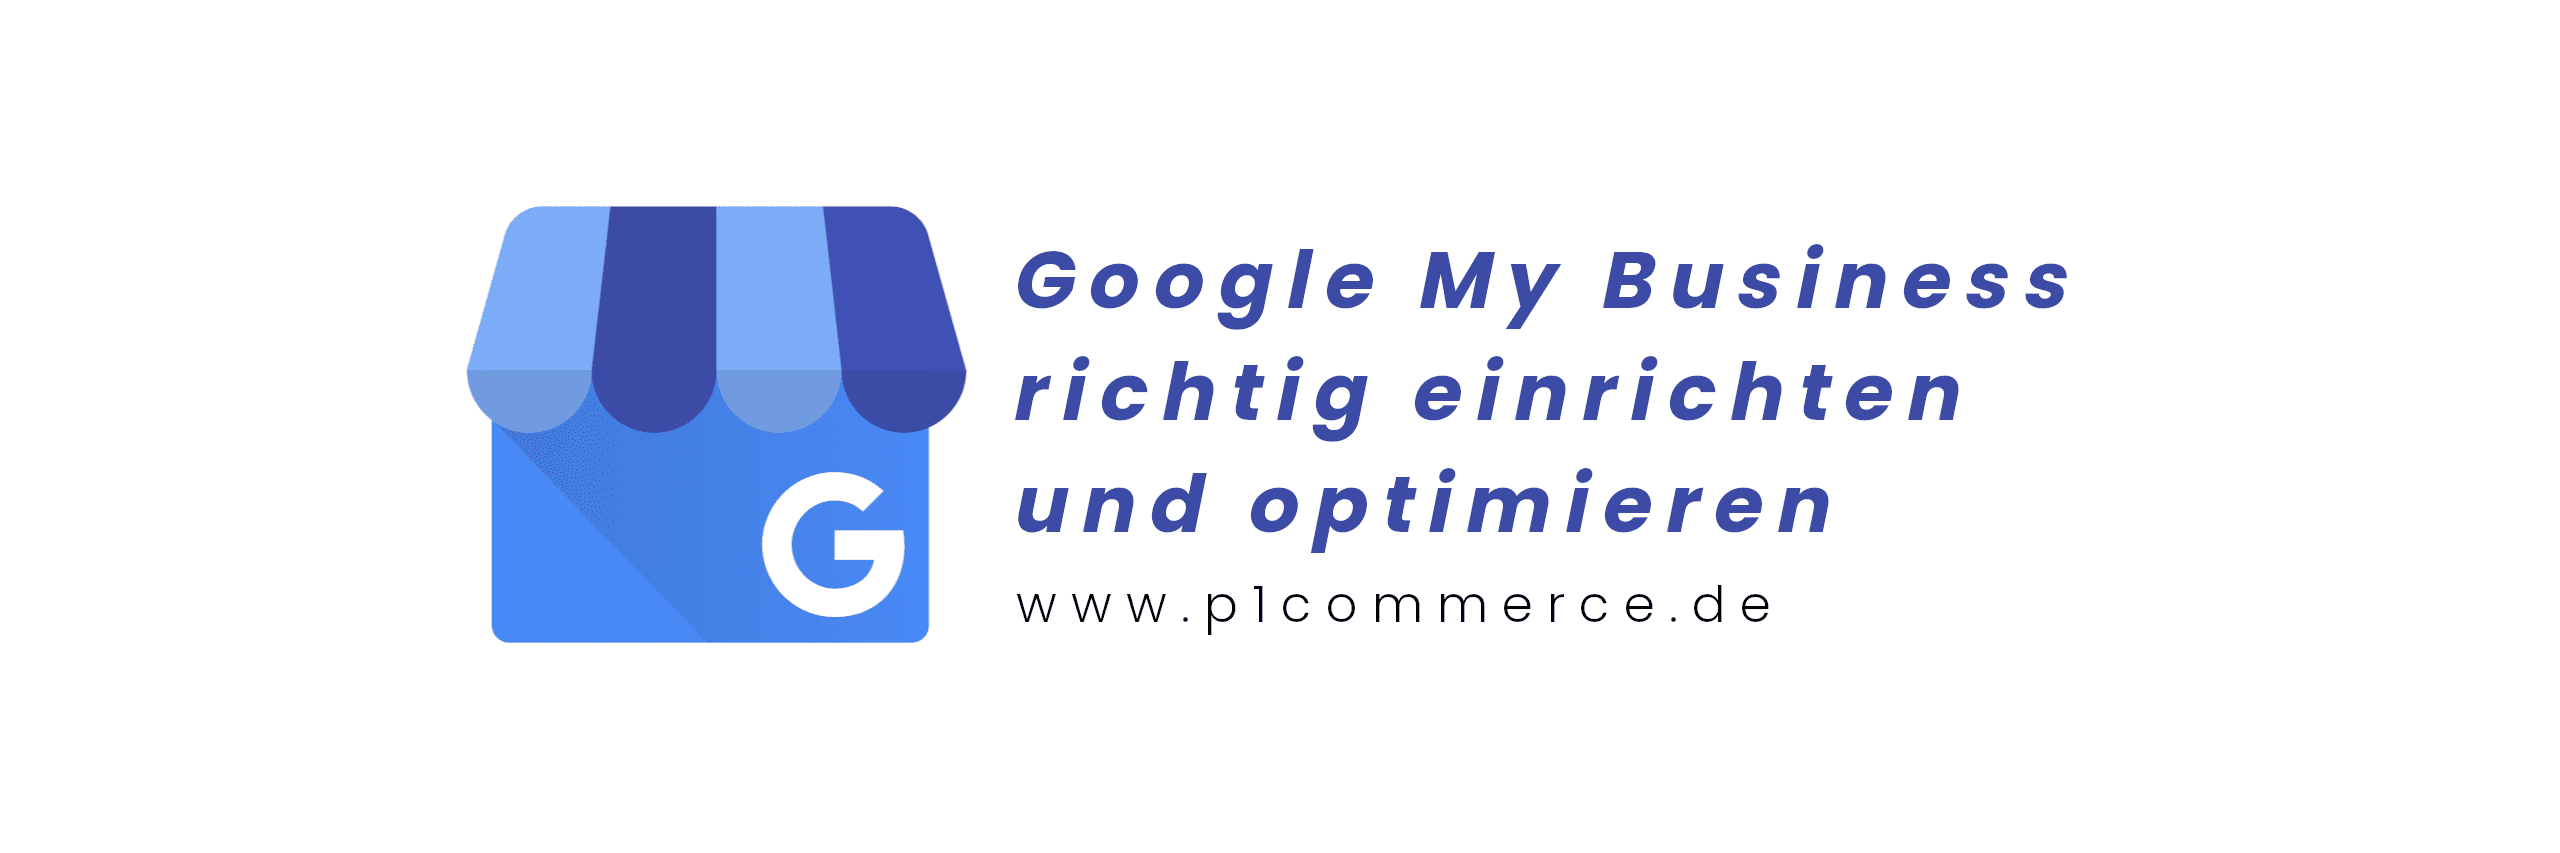 Google My Business einrichten p1 commerce